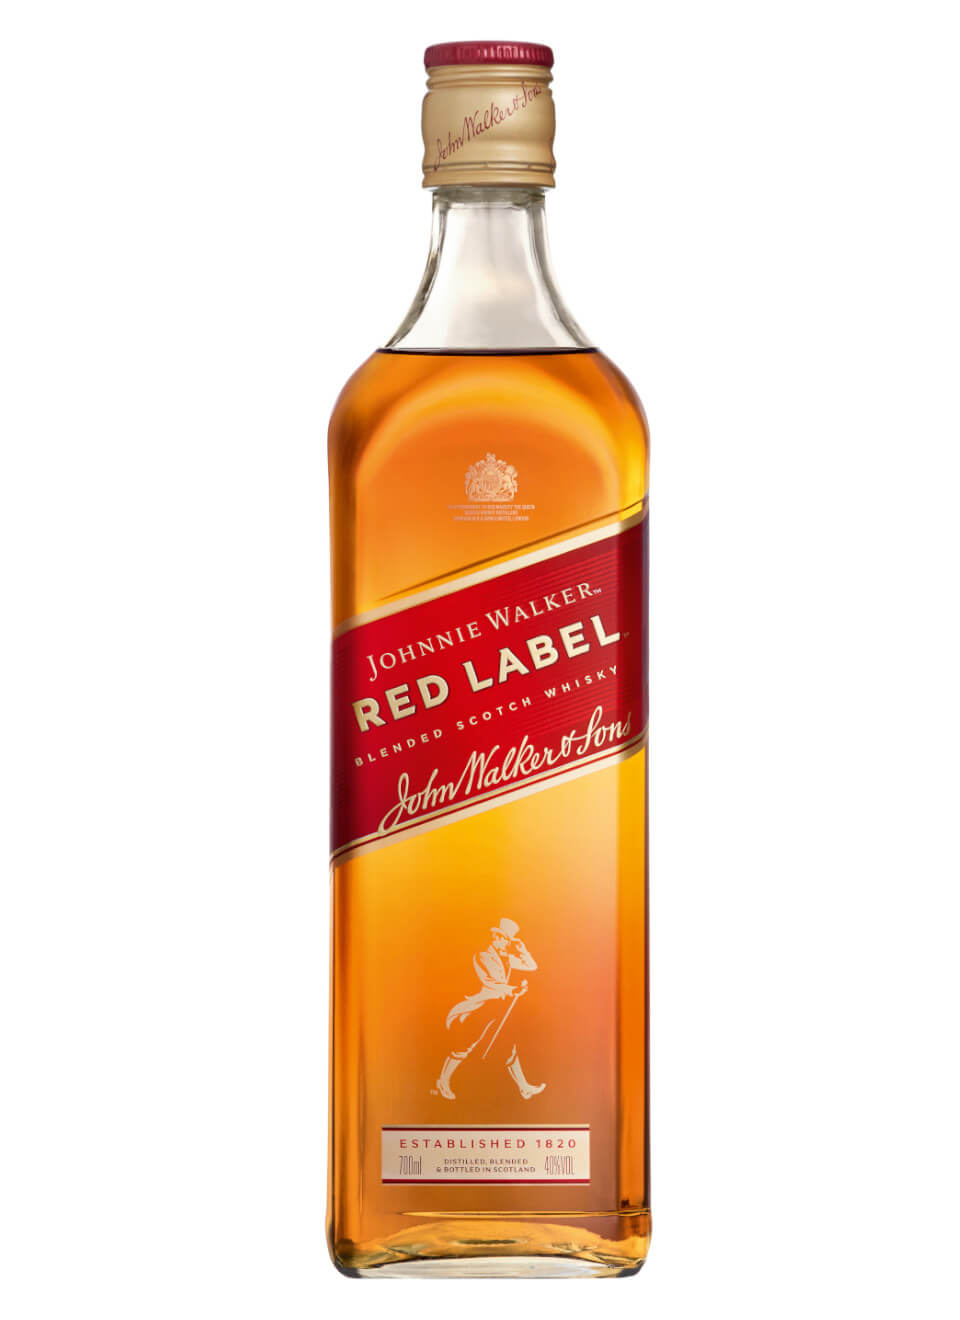 Johnnie walker 0.7. Виски Johnnie Walker Red Label 0.7. Johnnie Walker Red Label 1000ml. Джонни Уокер ред лейбл 0.7. Виски Johnnie Walker Red Label, 0,7л.